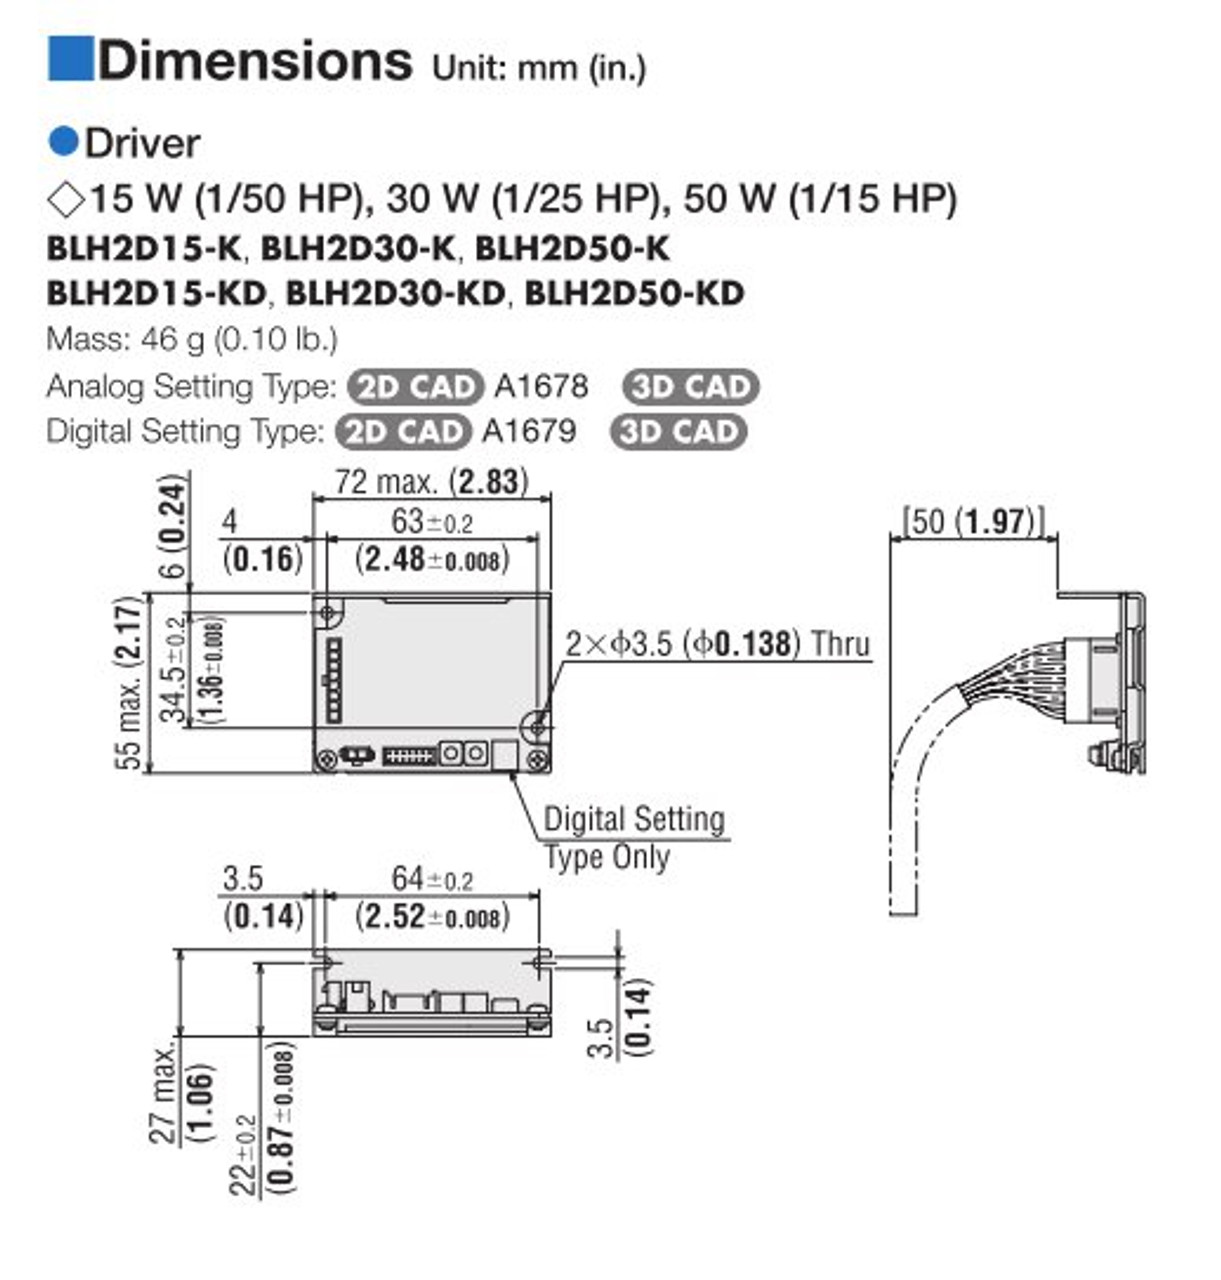 BLHM015K-30 / BLH2D15-KD - Dimensions